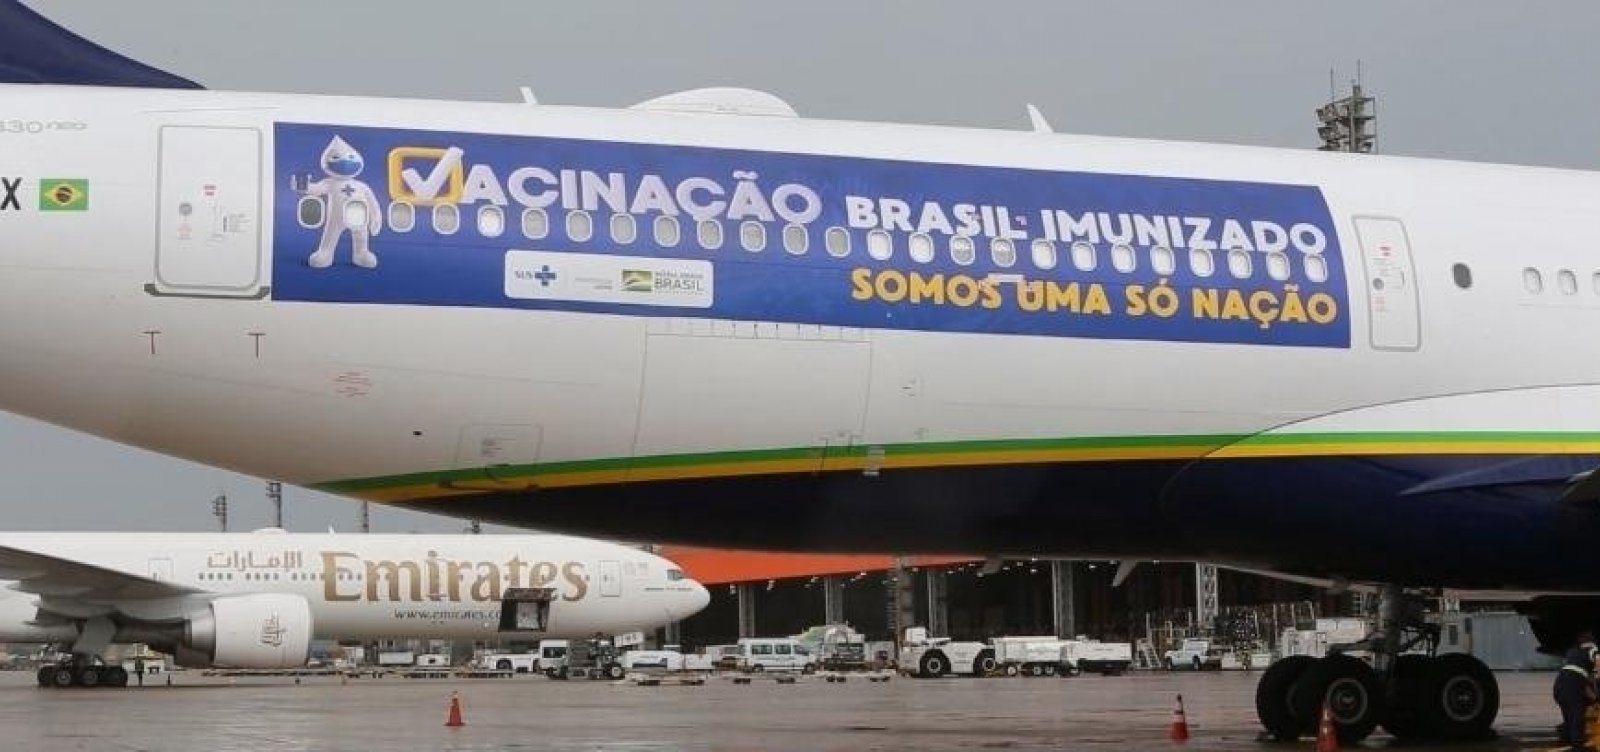 Governo decide usar avião que buscaria vacinas na Índia para entrega de oxigênio em Manaus